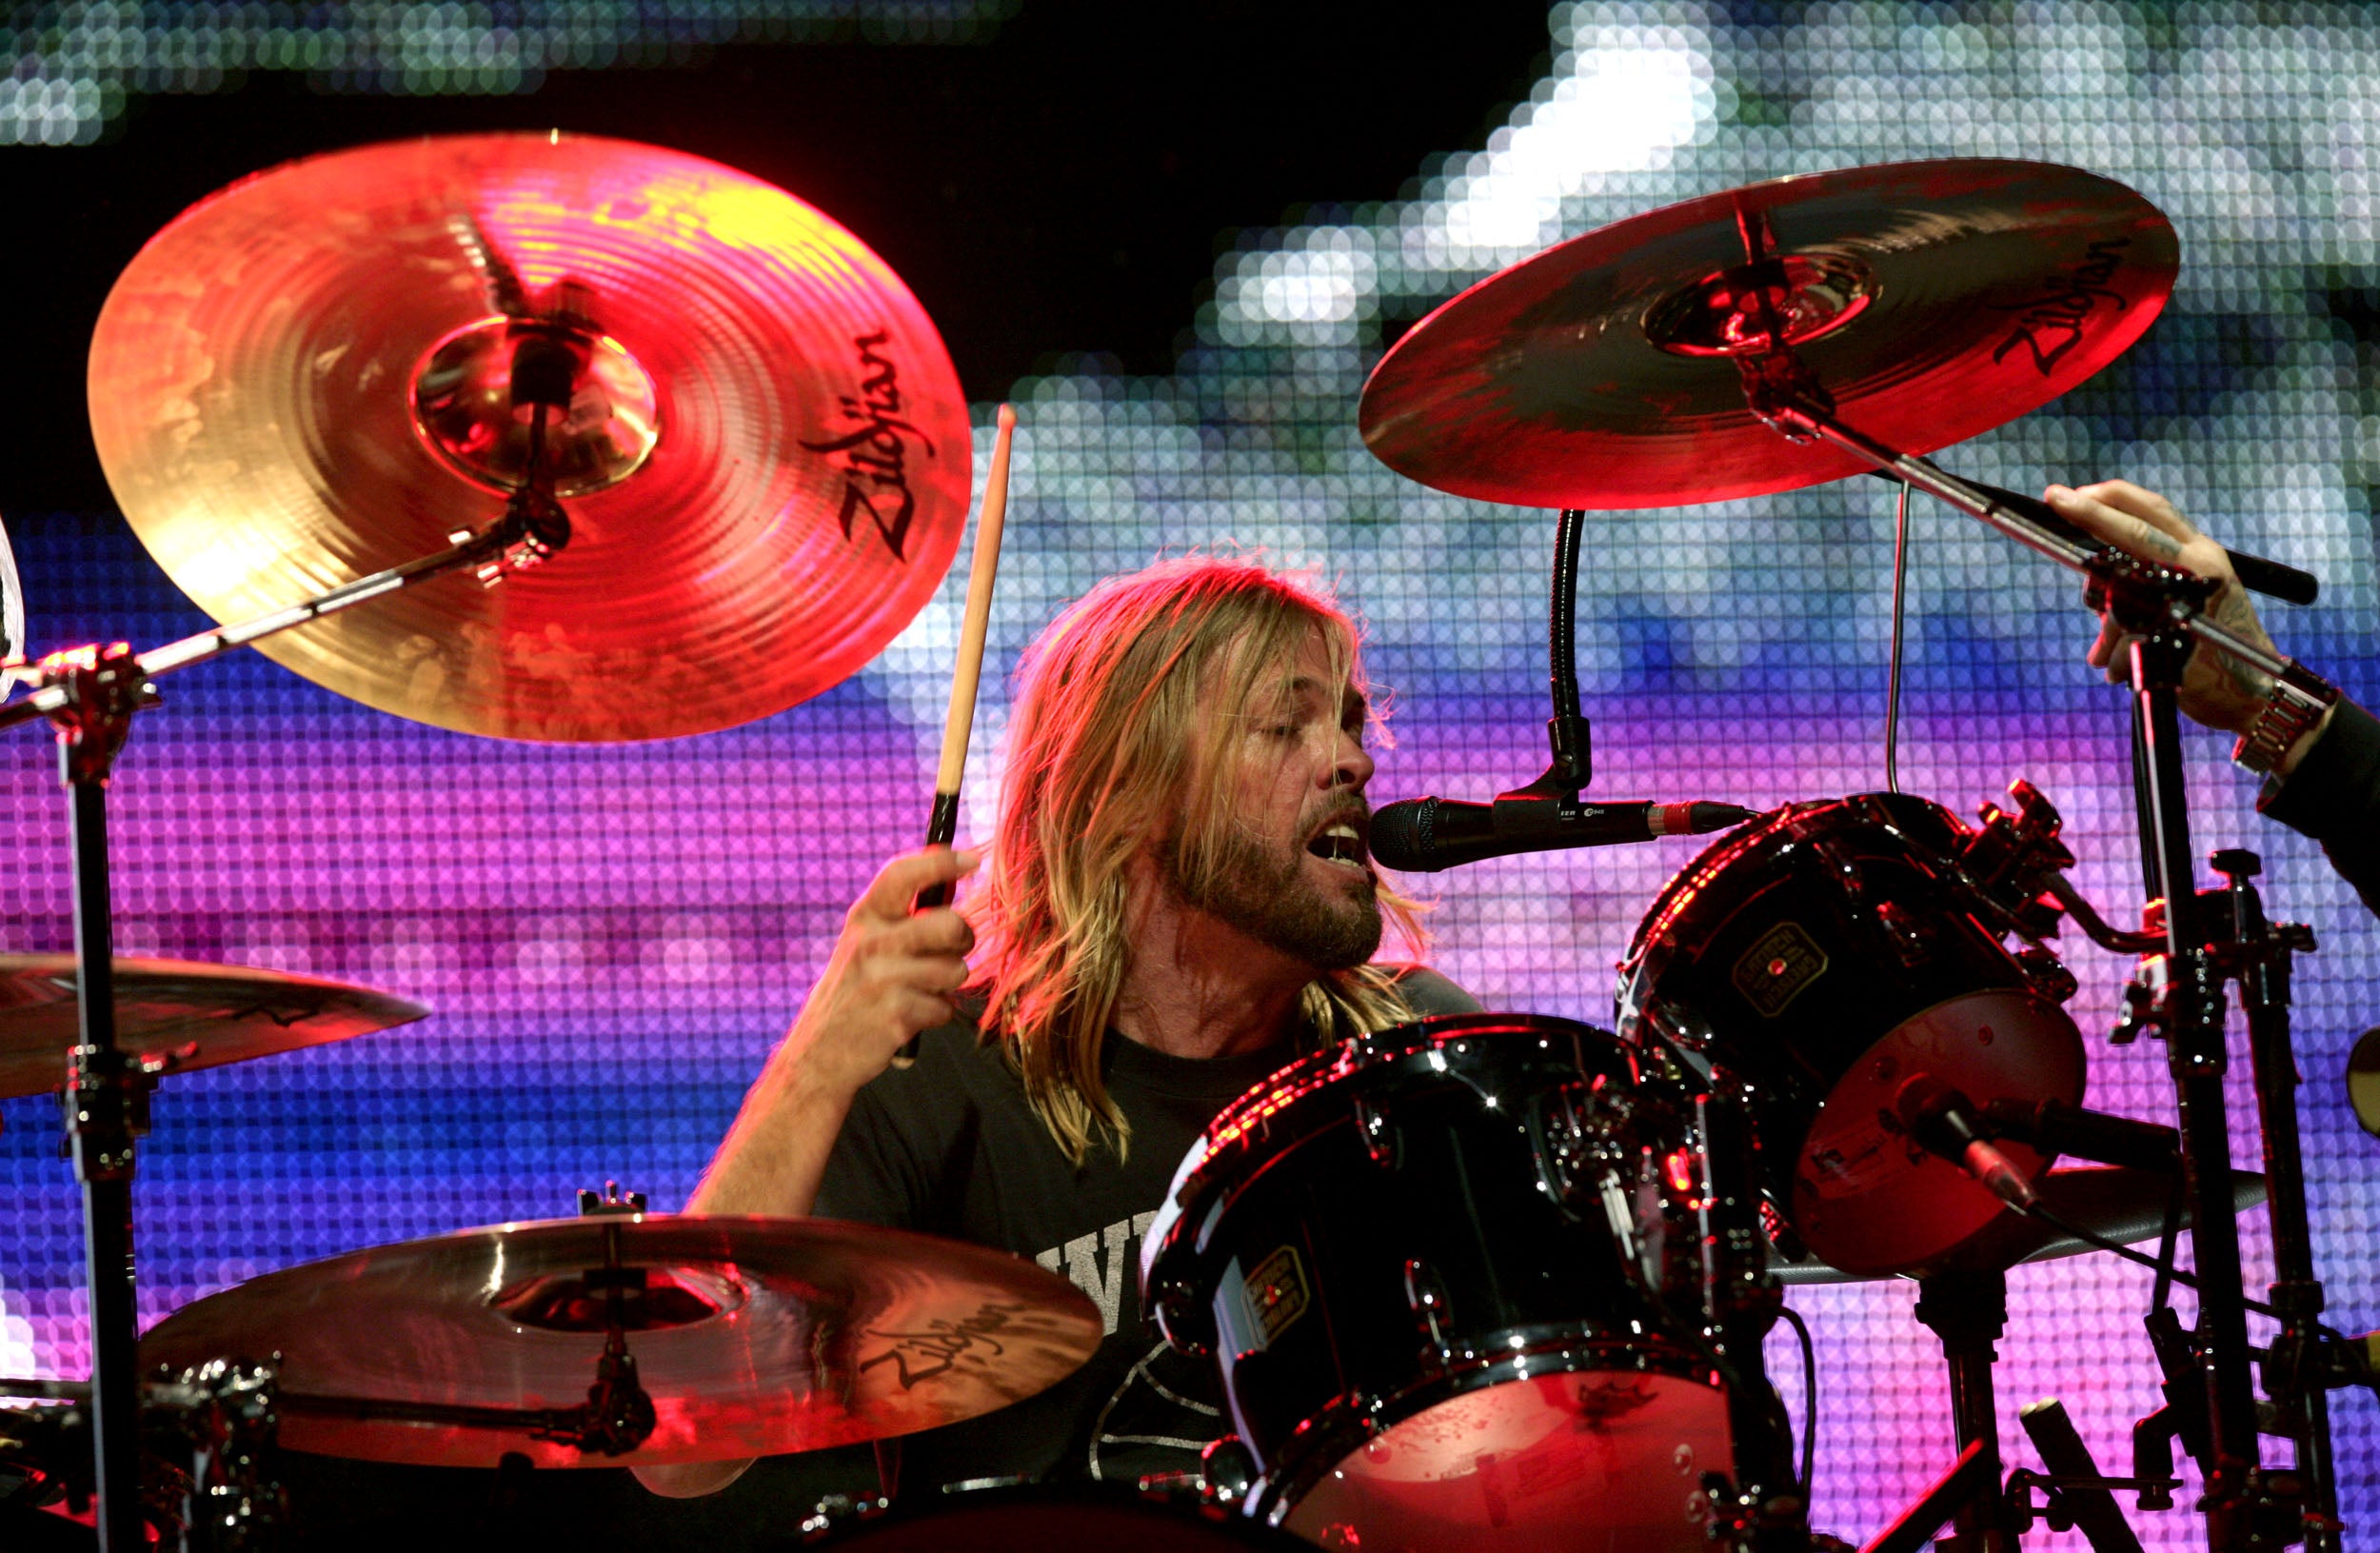 Roger Taylor dijo que él y su familia están devastados por la muerte de Taylor Hawkins, el baterista de Foo Fighters